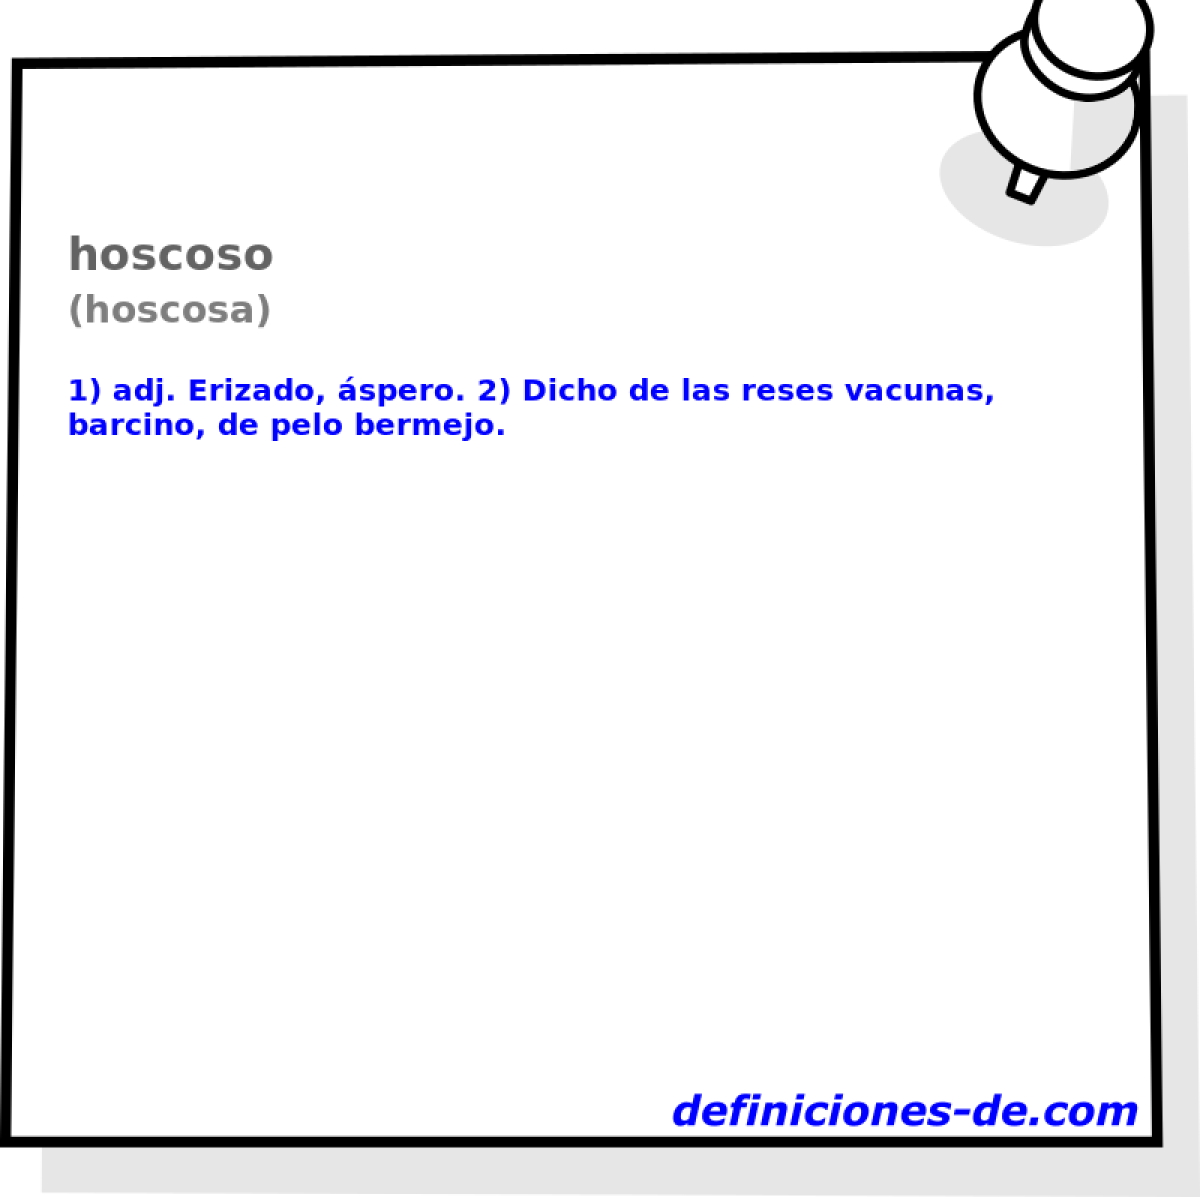 hoscoso (hoscosa)